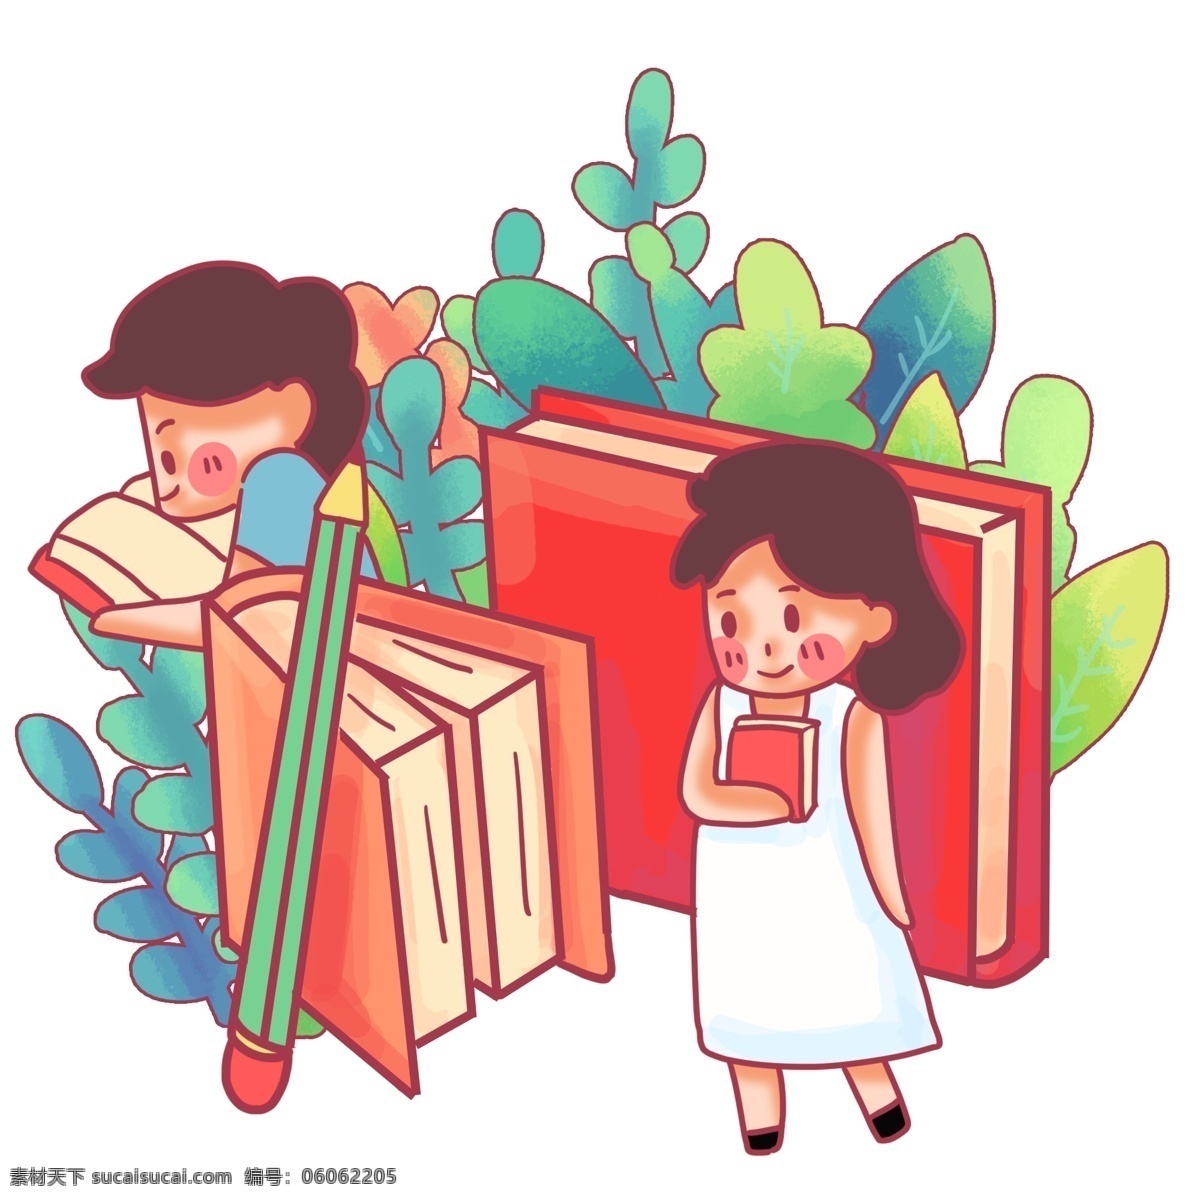 世界 读书 日 认真 阅读 红色 铅笔 夸张场景 小女生 世界读书日 书本 学习 知识 4月23日 看书 创意 卡通 萌 绿叶 绿色 书籍